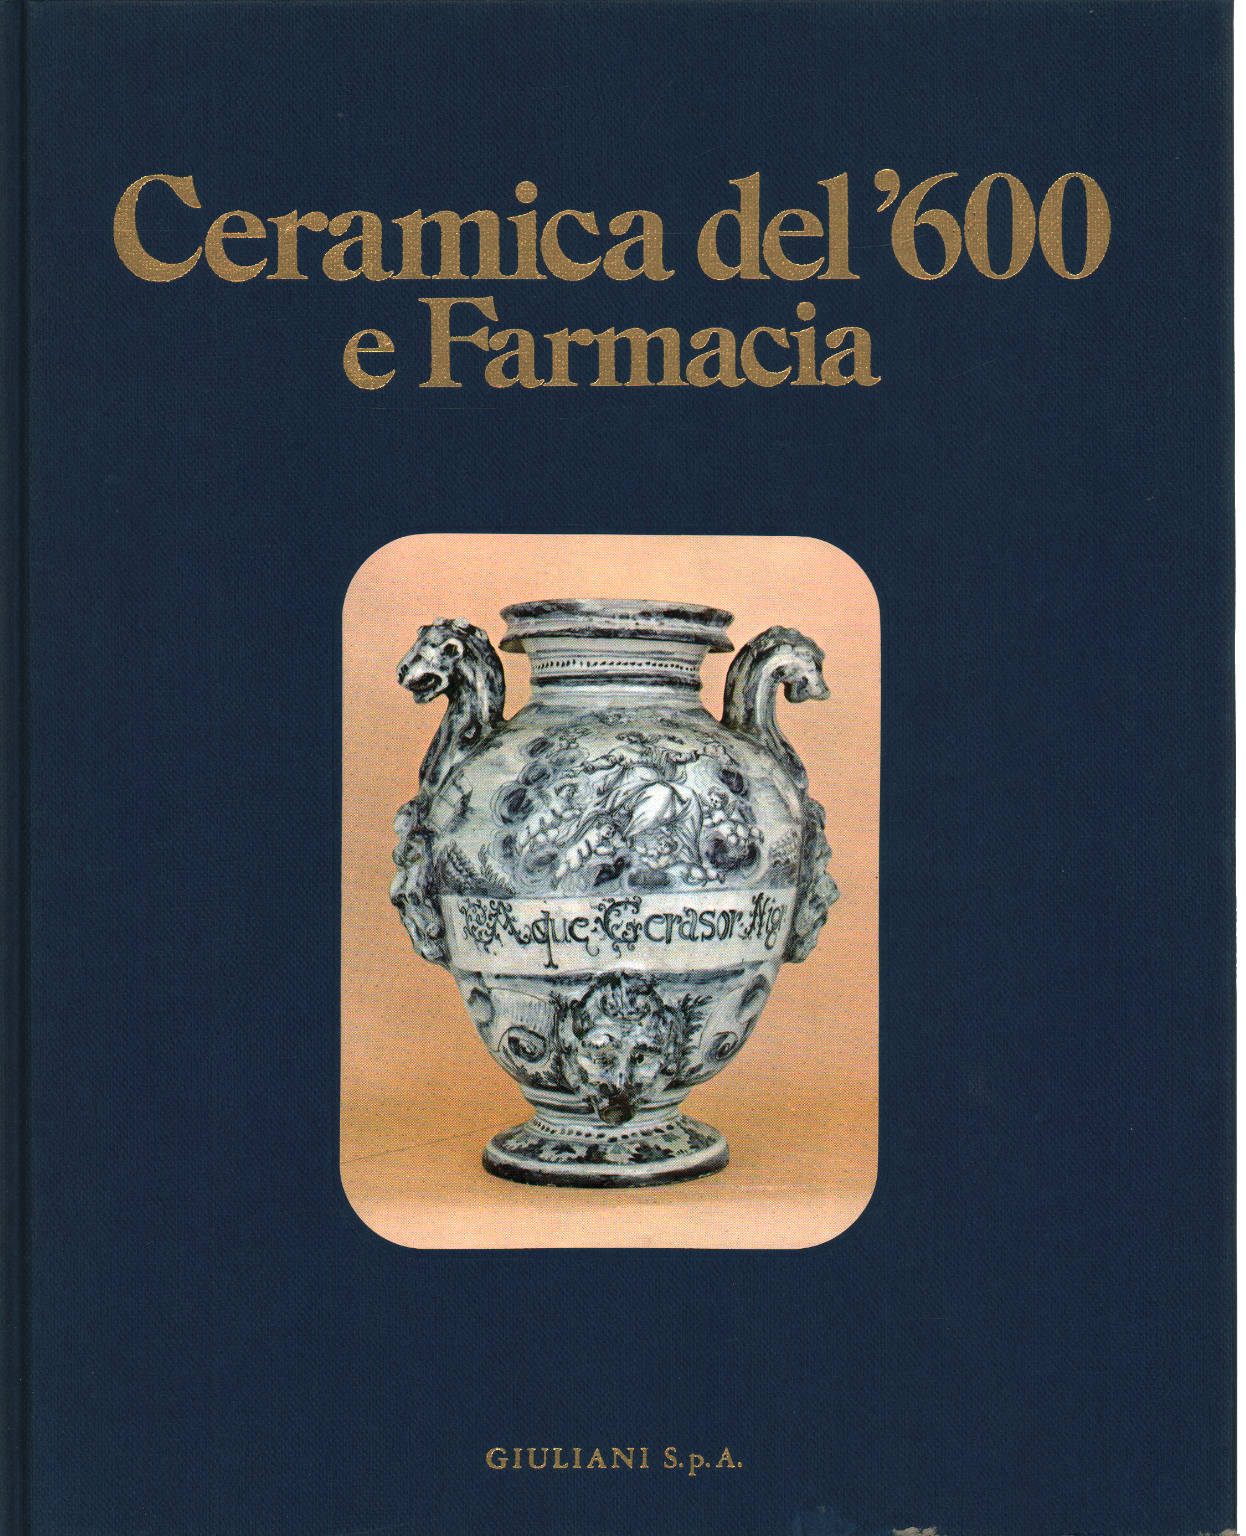 Ceramiche del '600 e Farmacia, Giorgio Lise